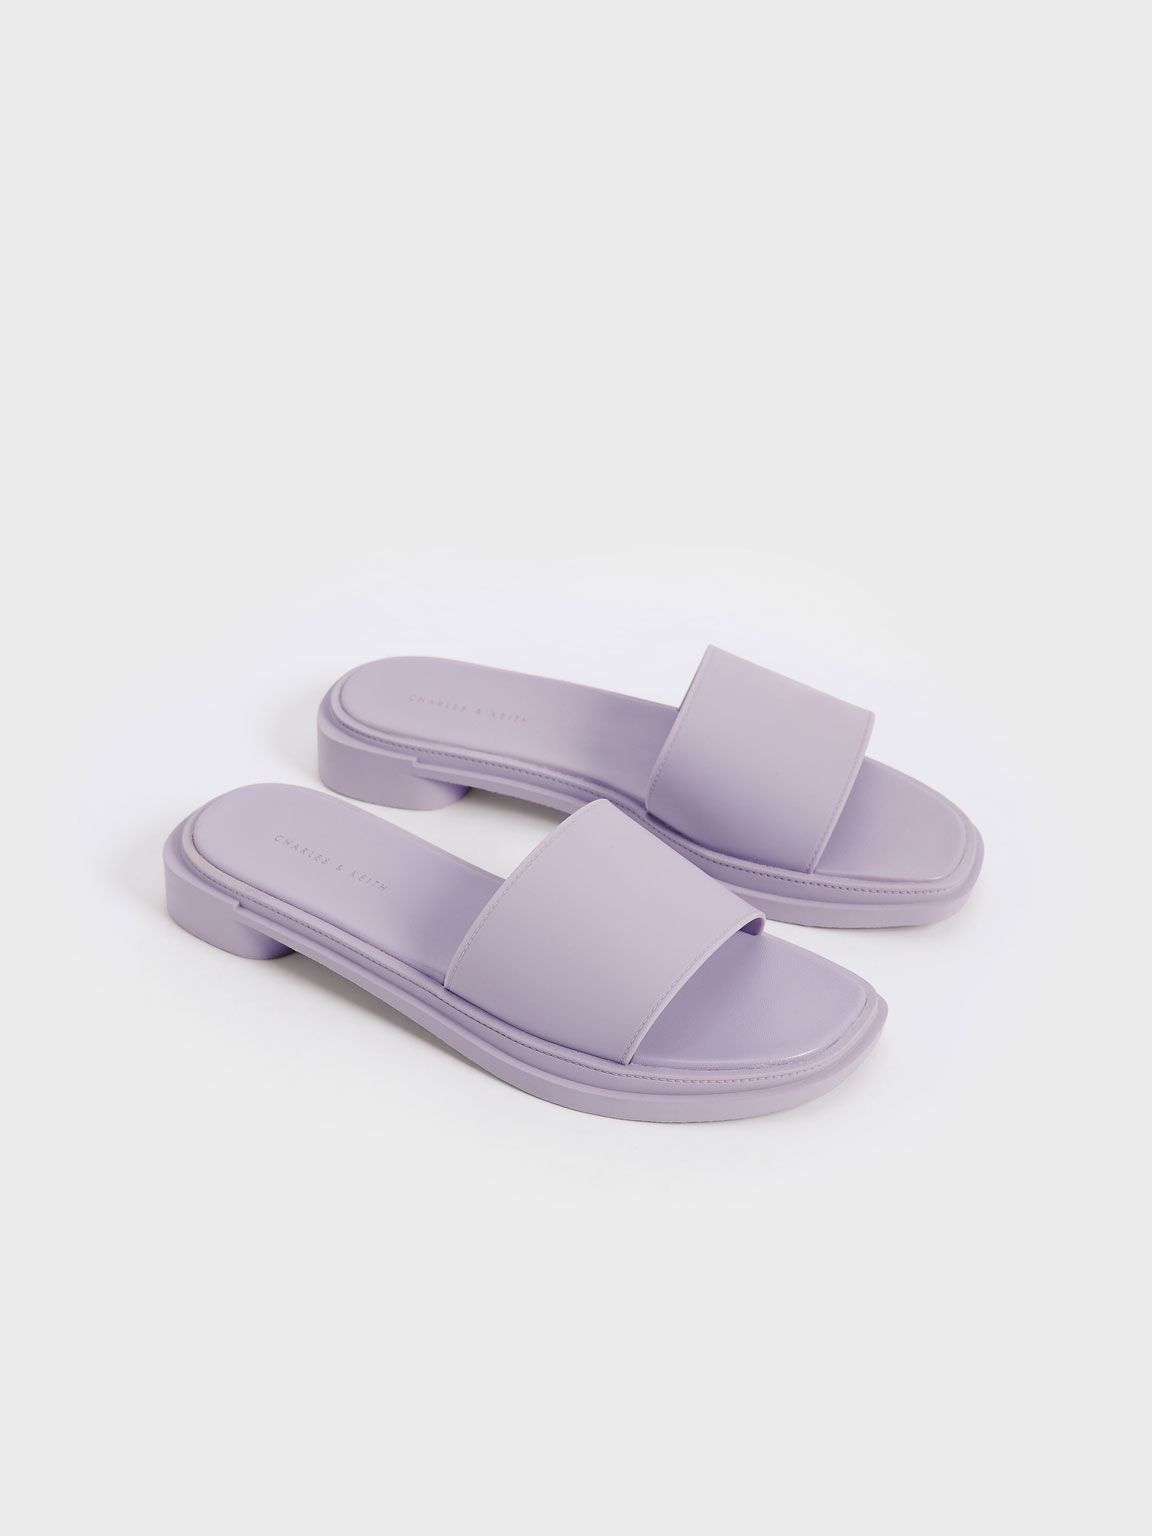 Slide Sandals, Lilac, hi-res